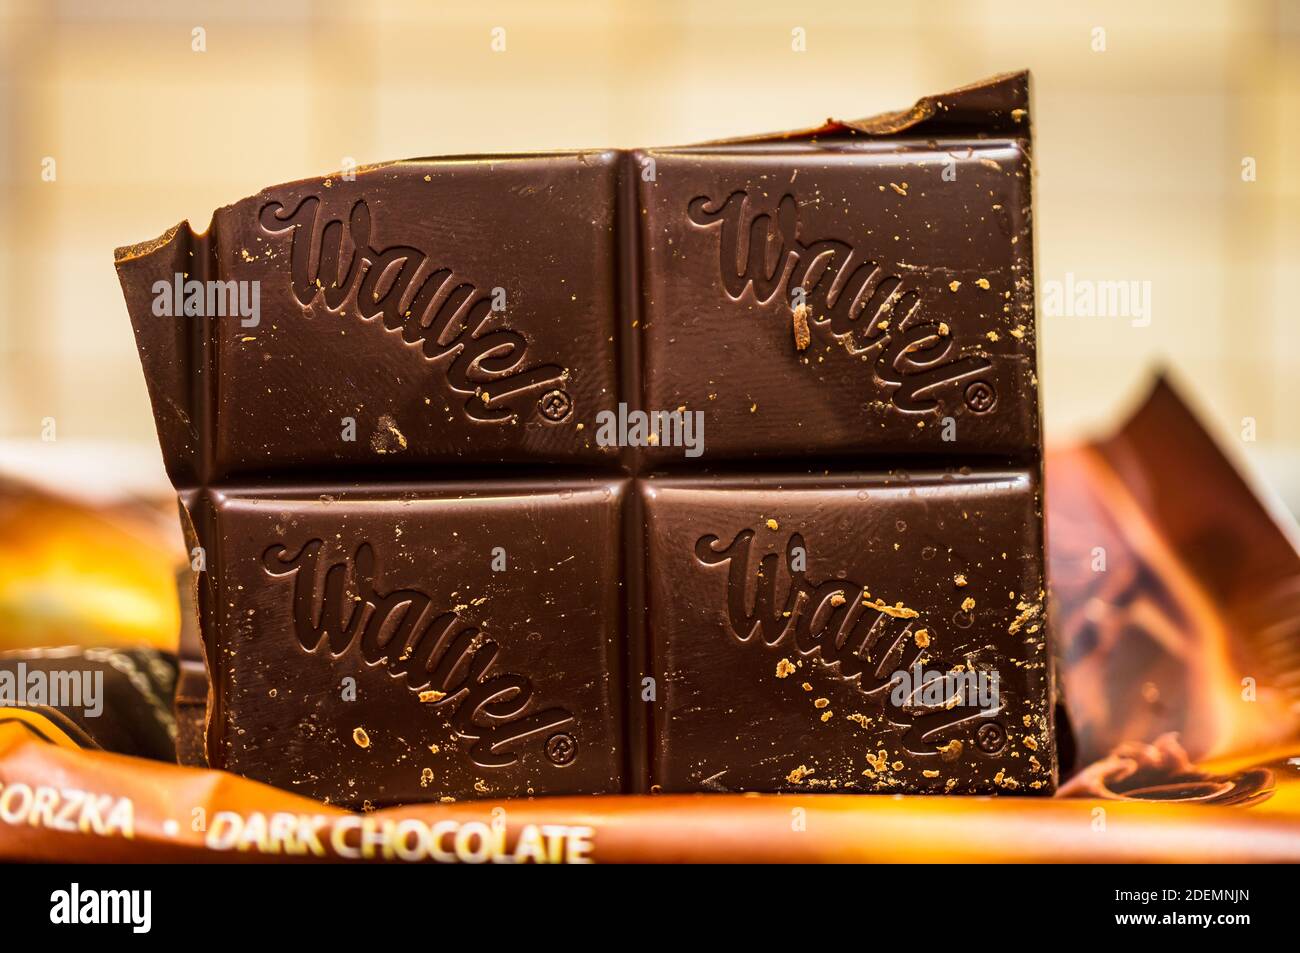 Suchard Rocher Dark Chocolate (24 Pieces)